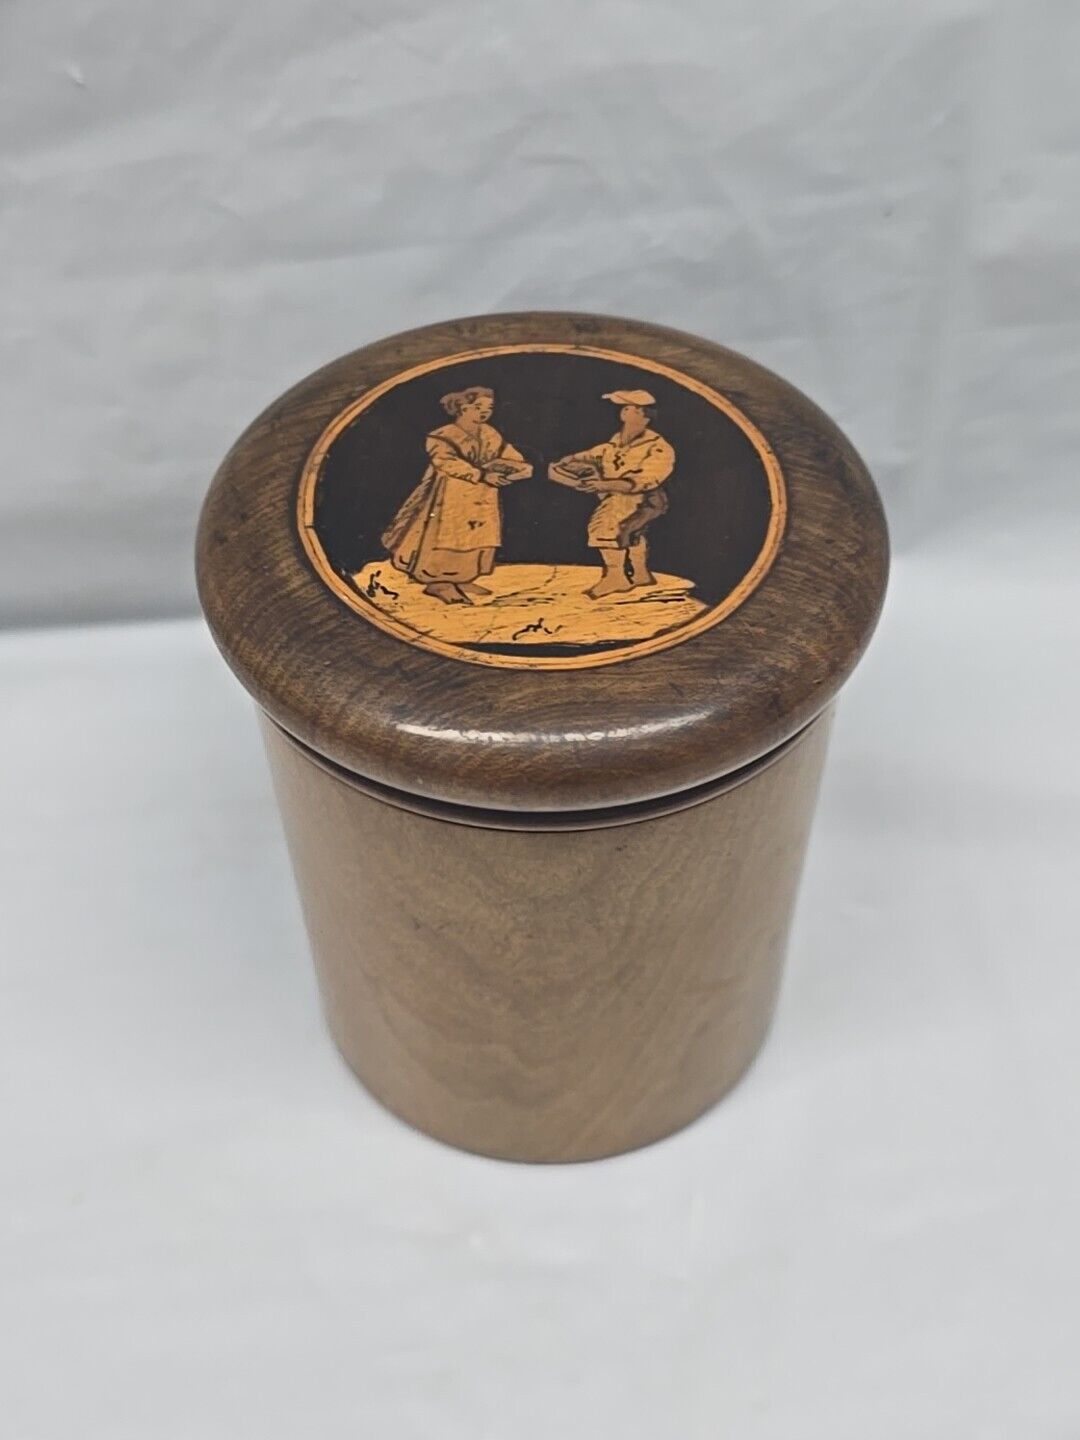 Round Wood Box Inlaid Wood Baker Biedermeier Antique German Measuring Cup Holder